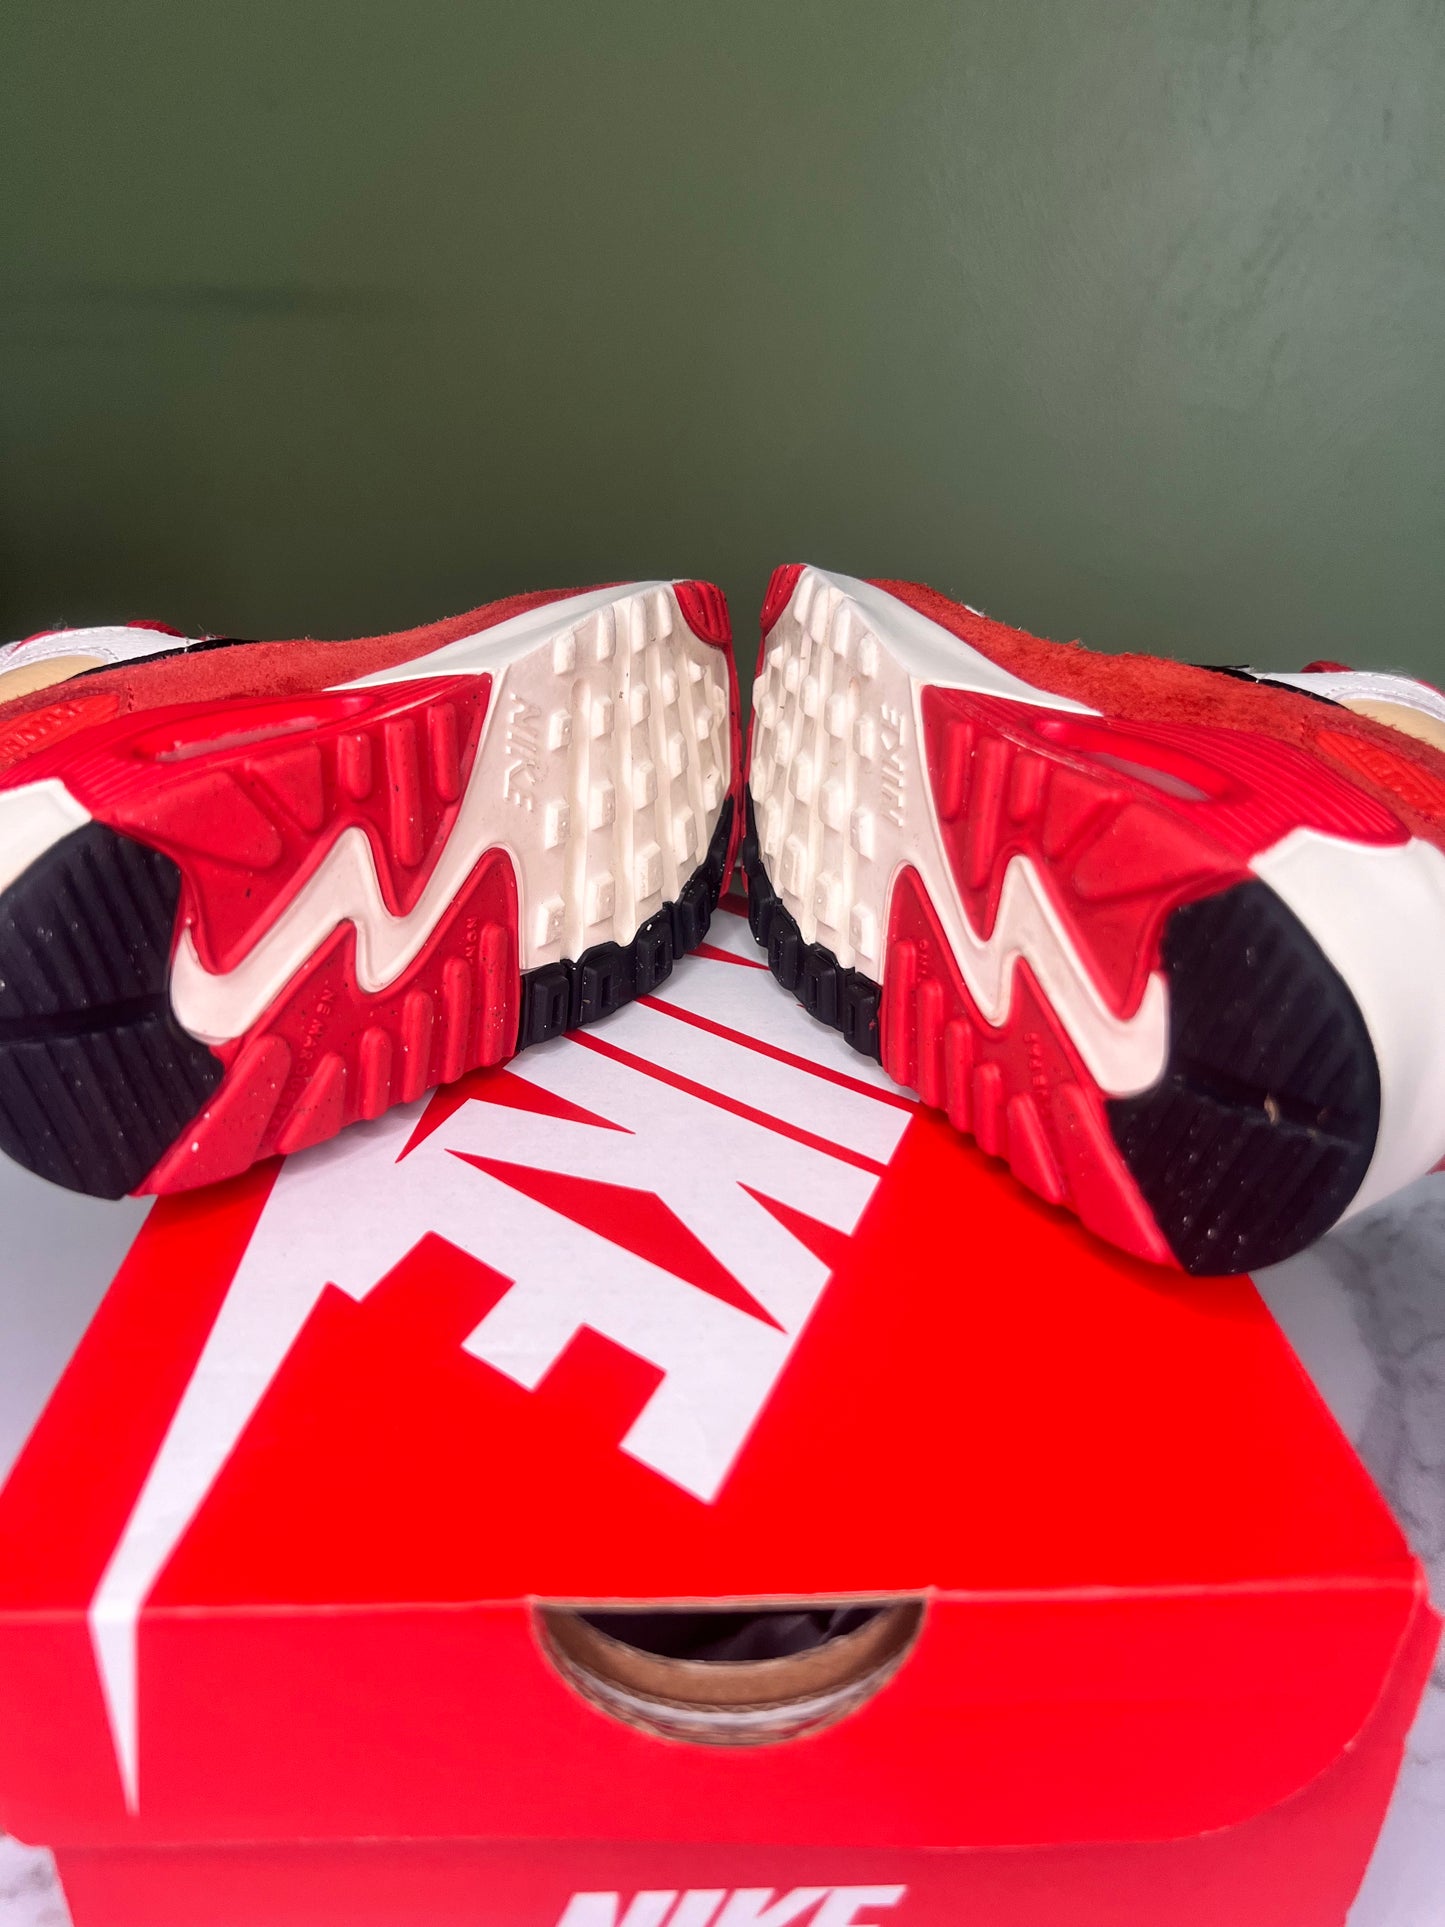 Nike Air Max 90 (TD) Tan Red 9C